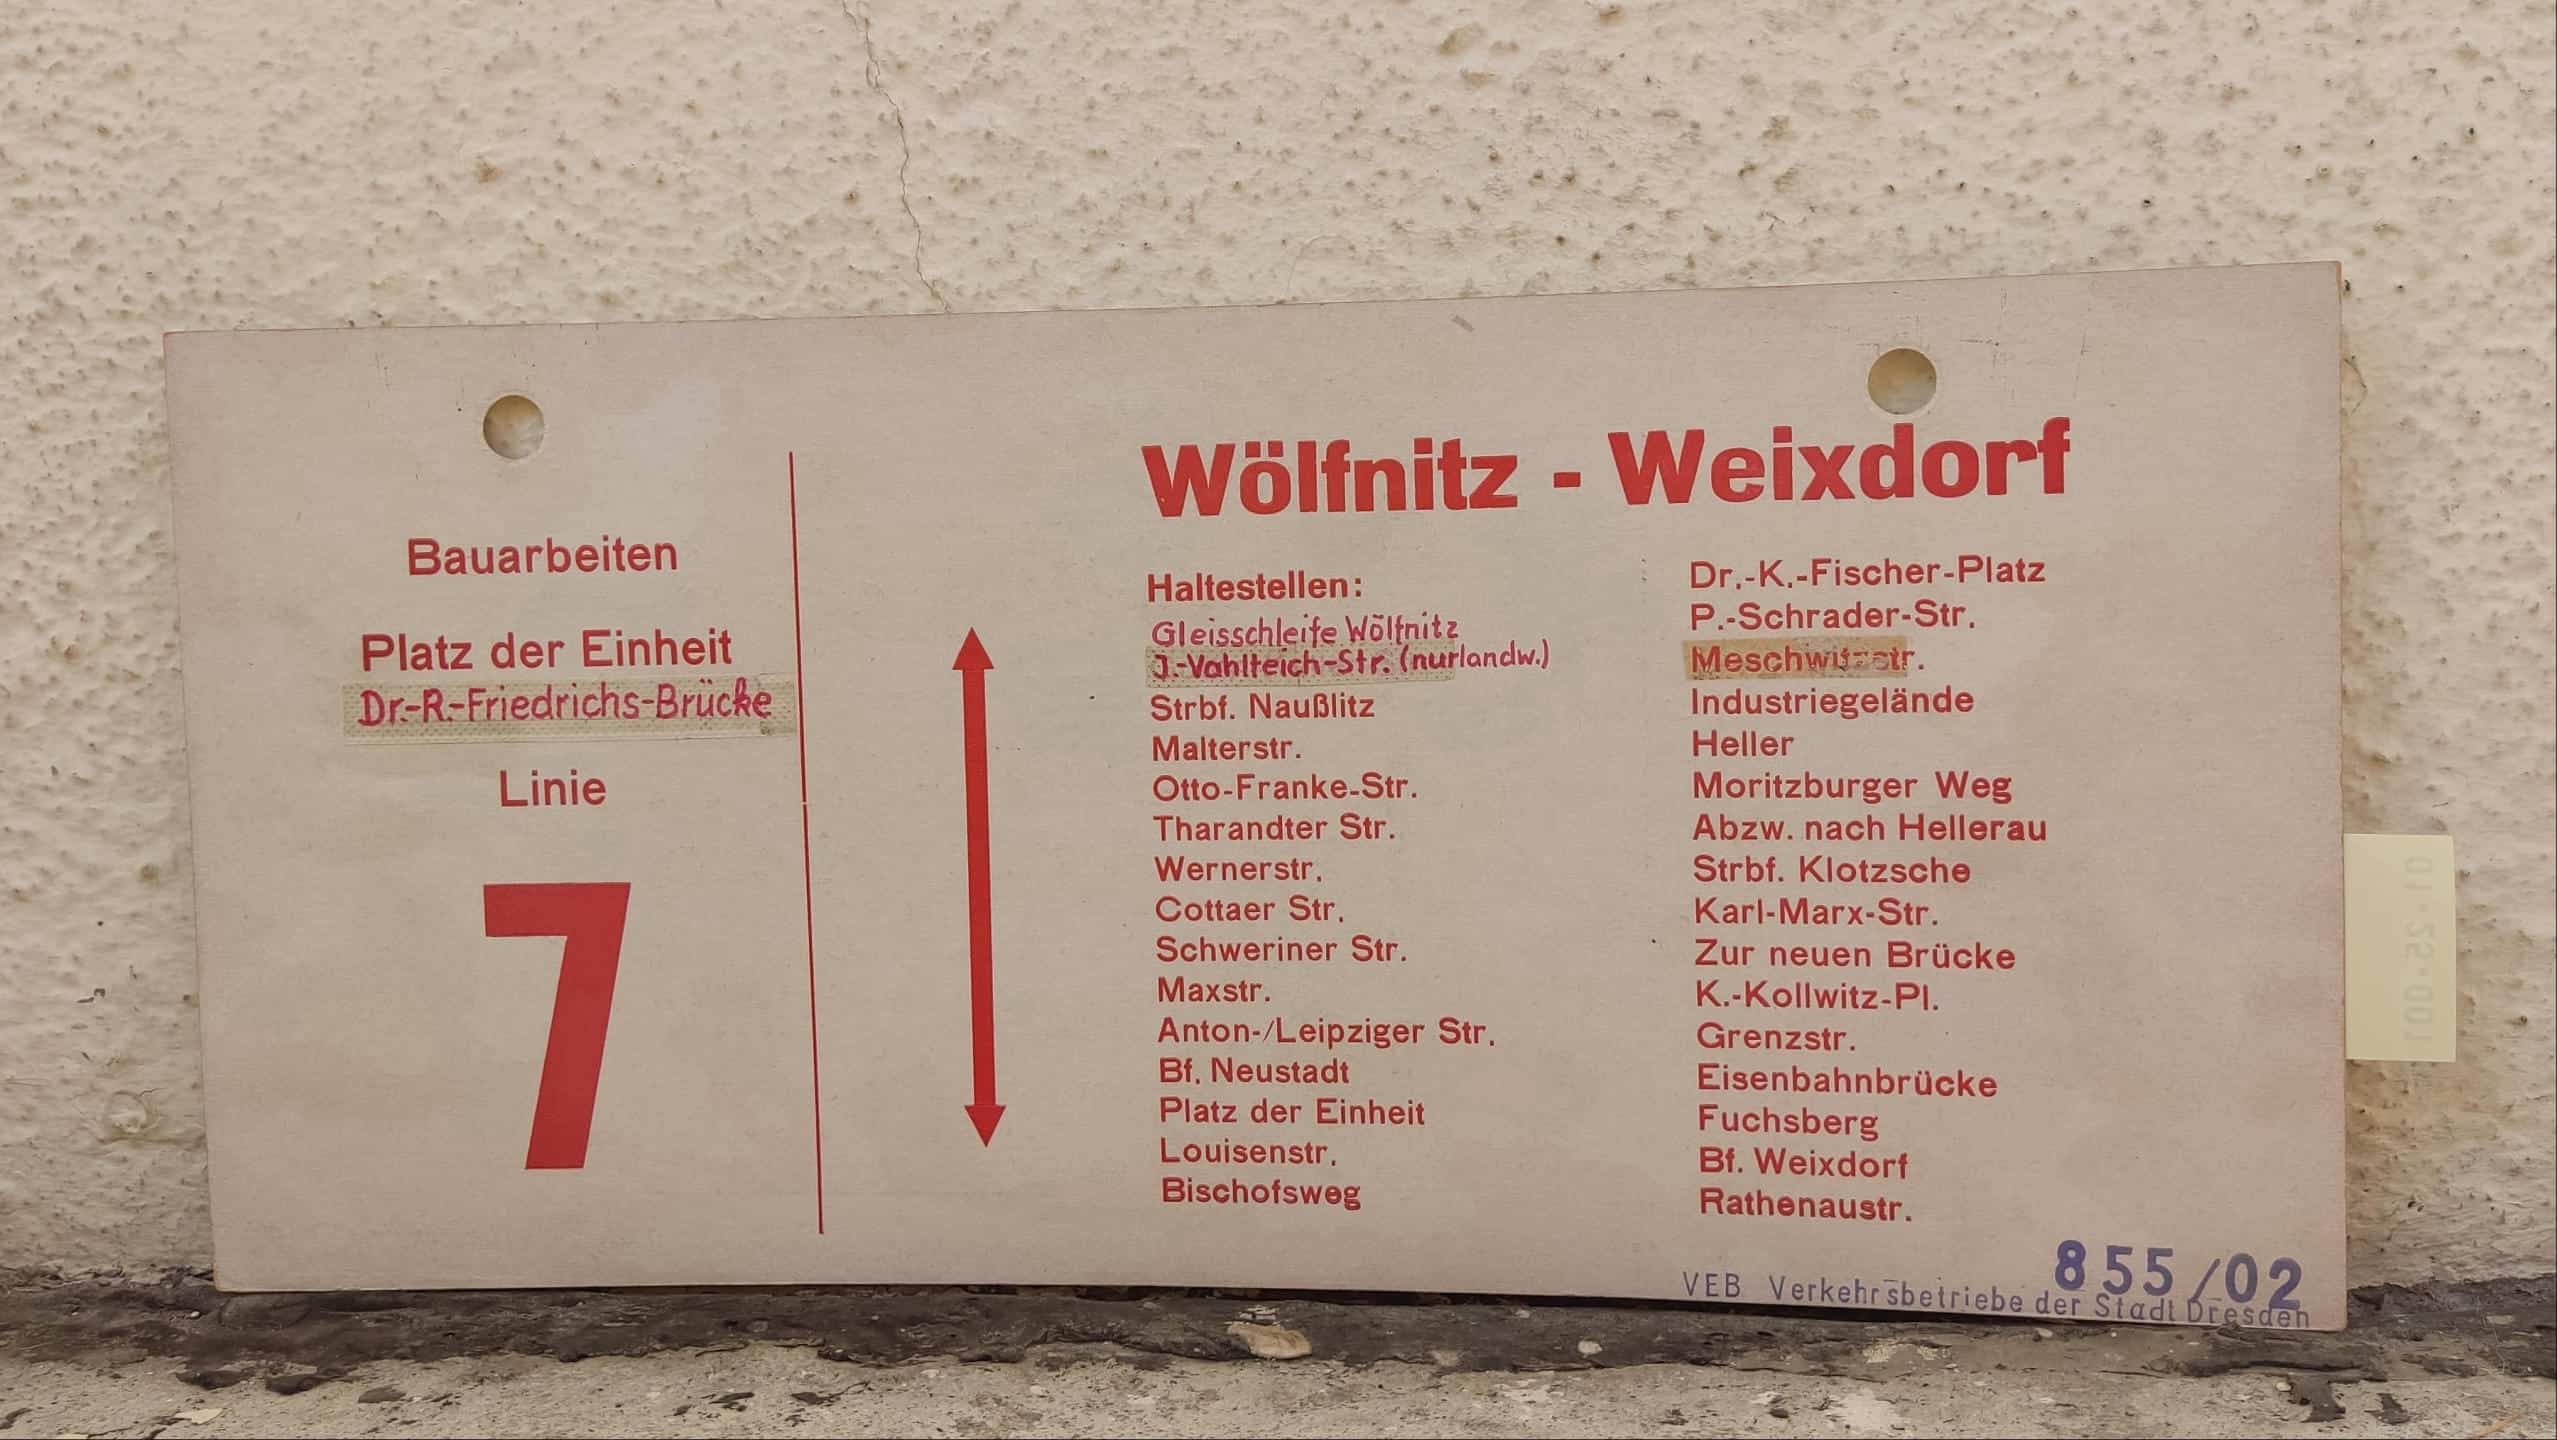 Bauarbeiten Platz der Einheit Dr.-R.-Friedrichs-Brücke Linie 7 Wölfnitz – Weixdorf #2